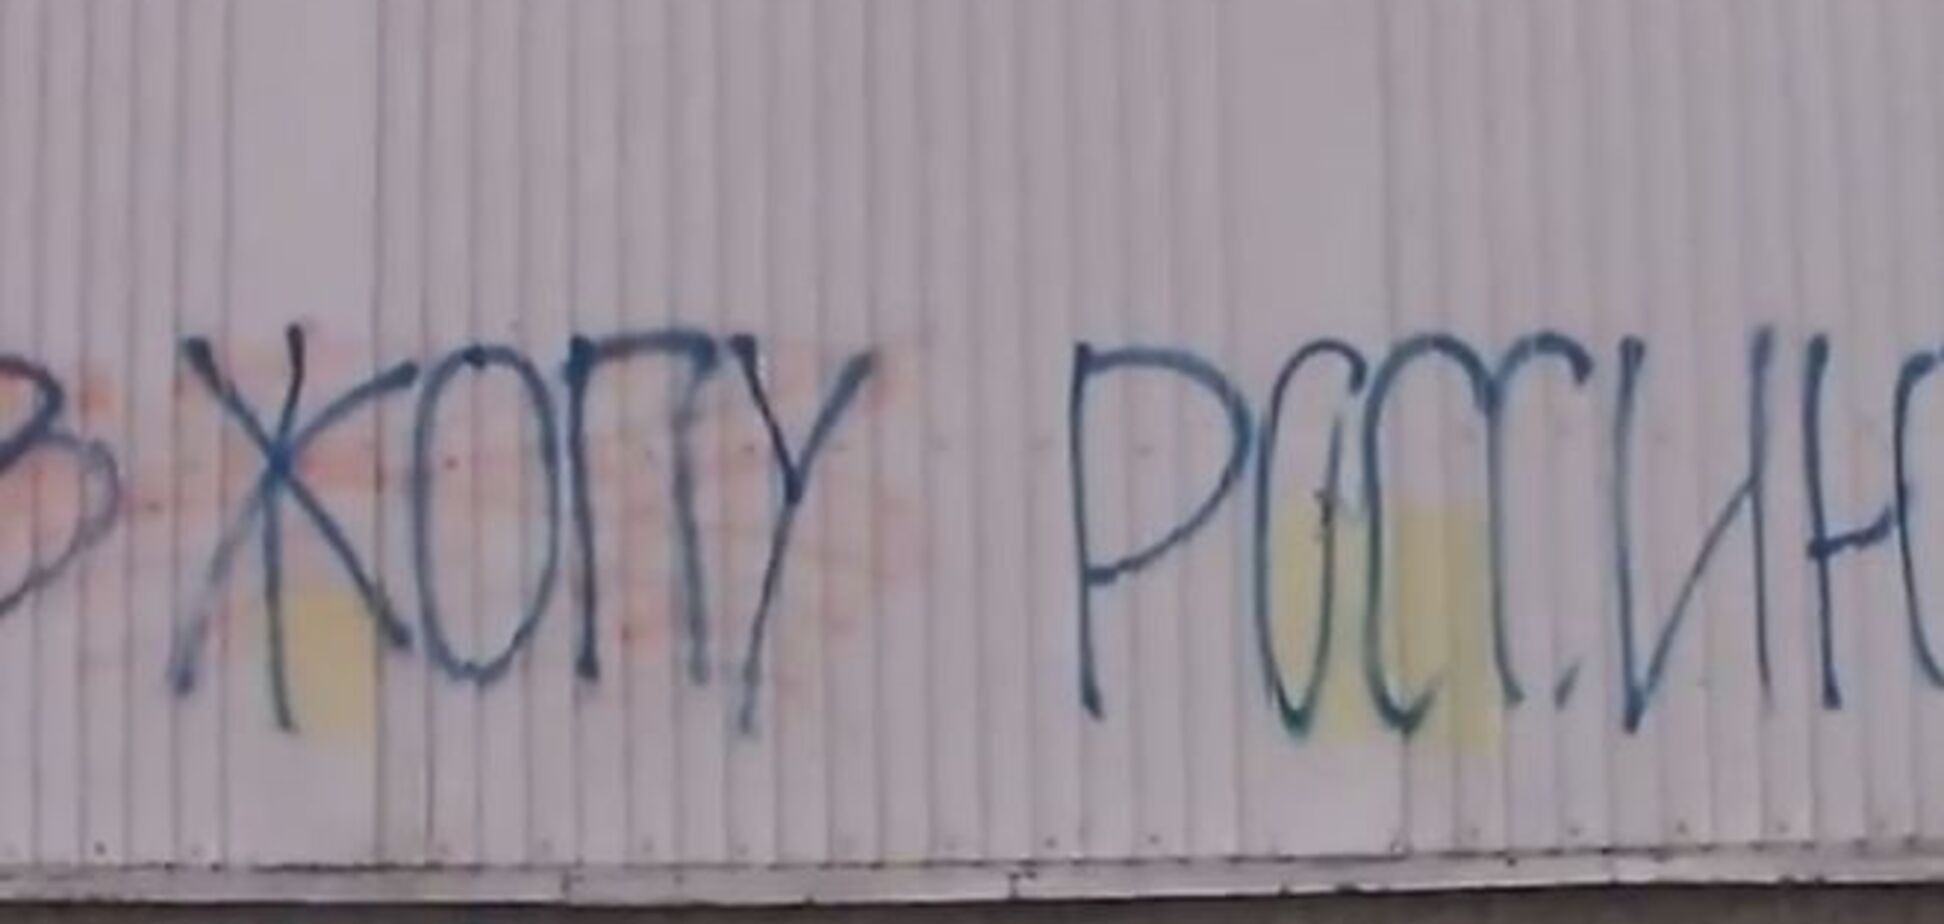 'В * опу Росію!': У Донецьку знову з'явилися антиросійські графіті - опубліковано фото і відео